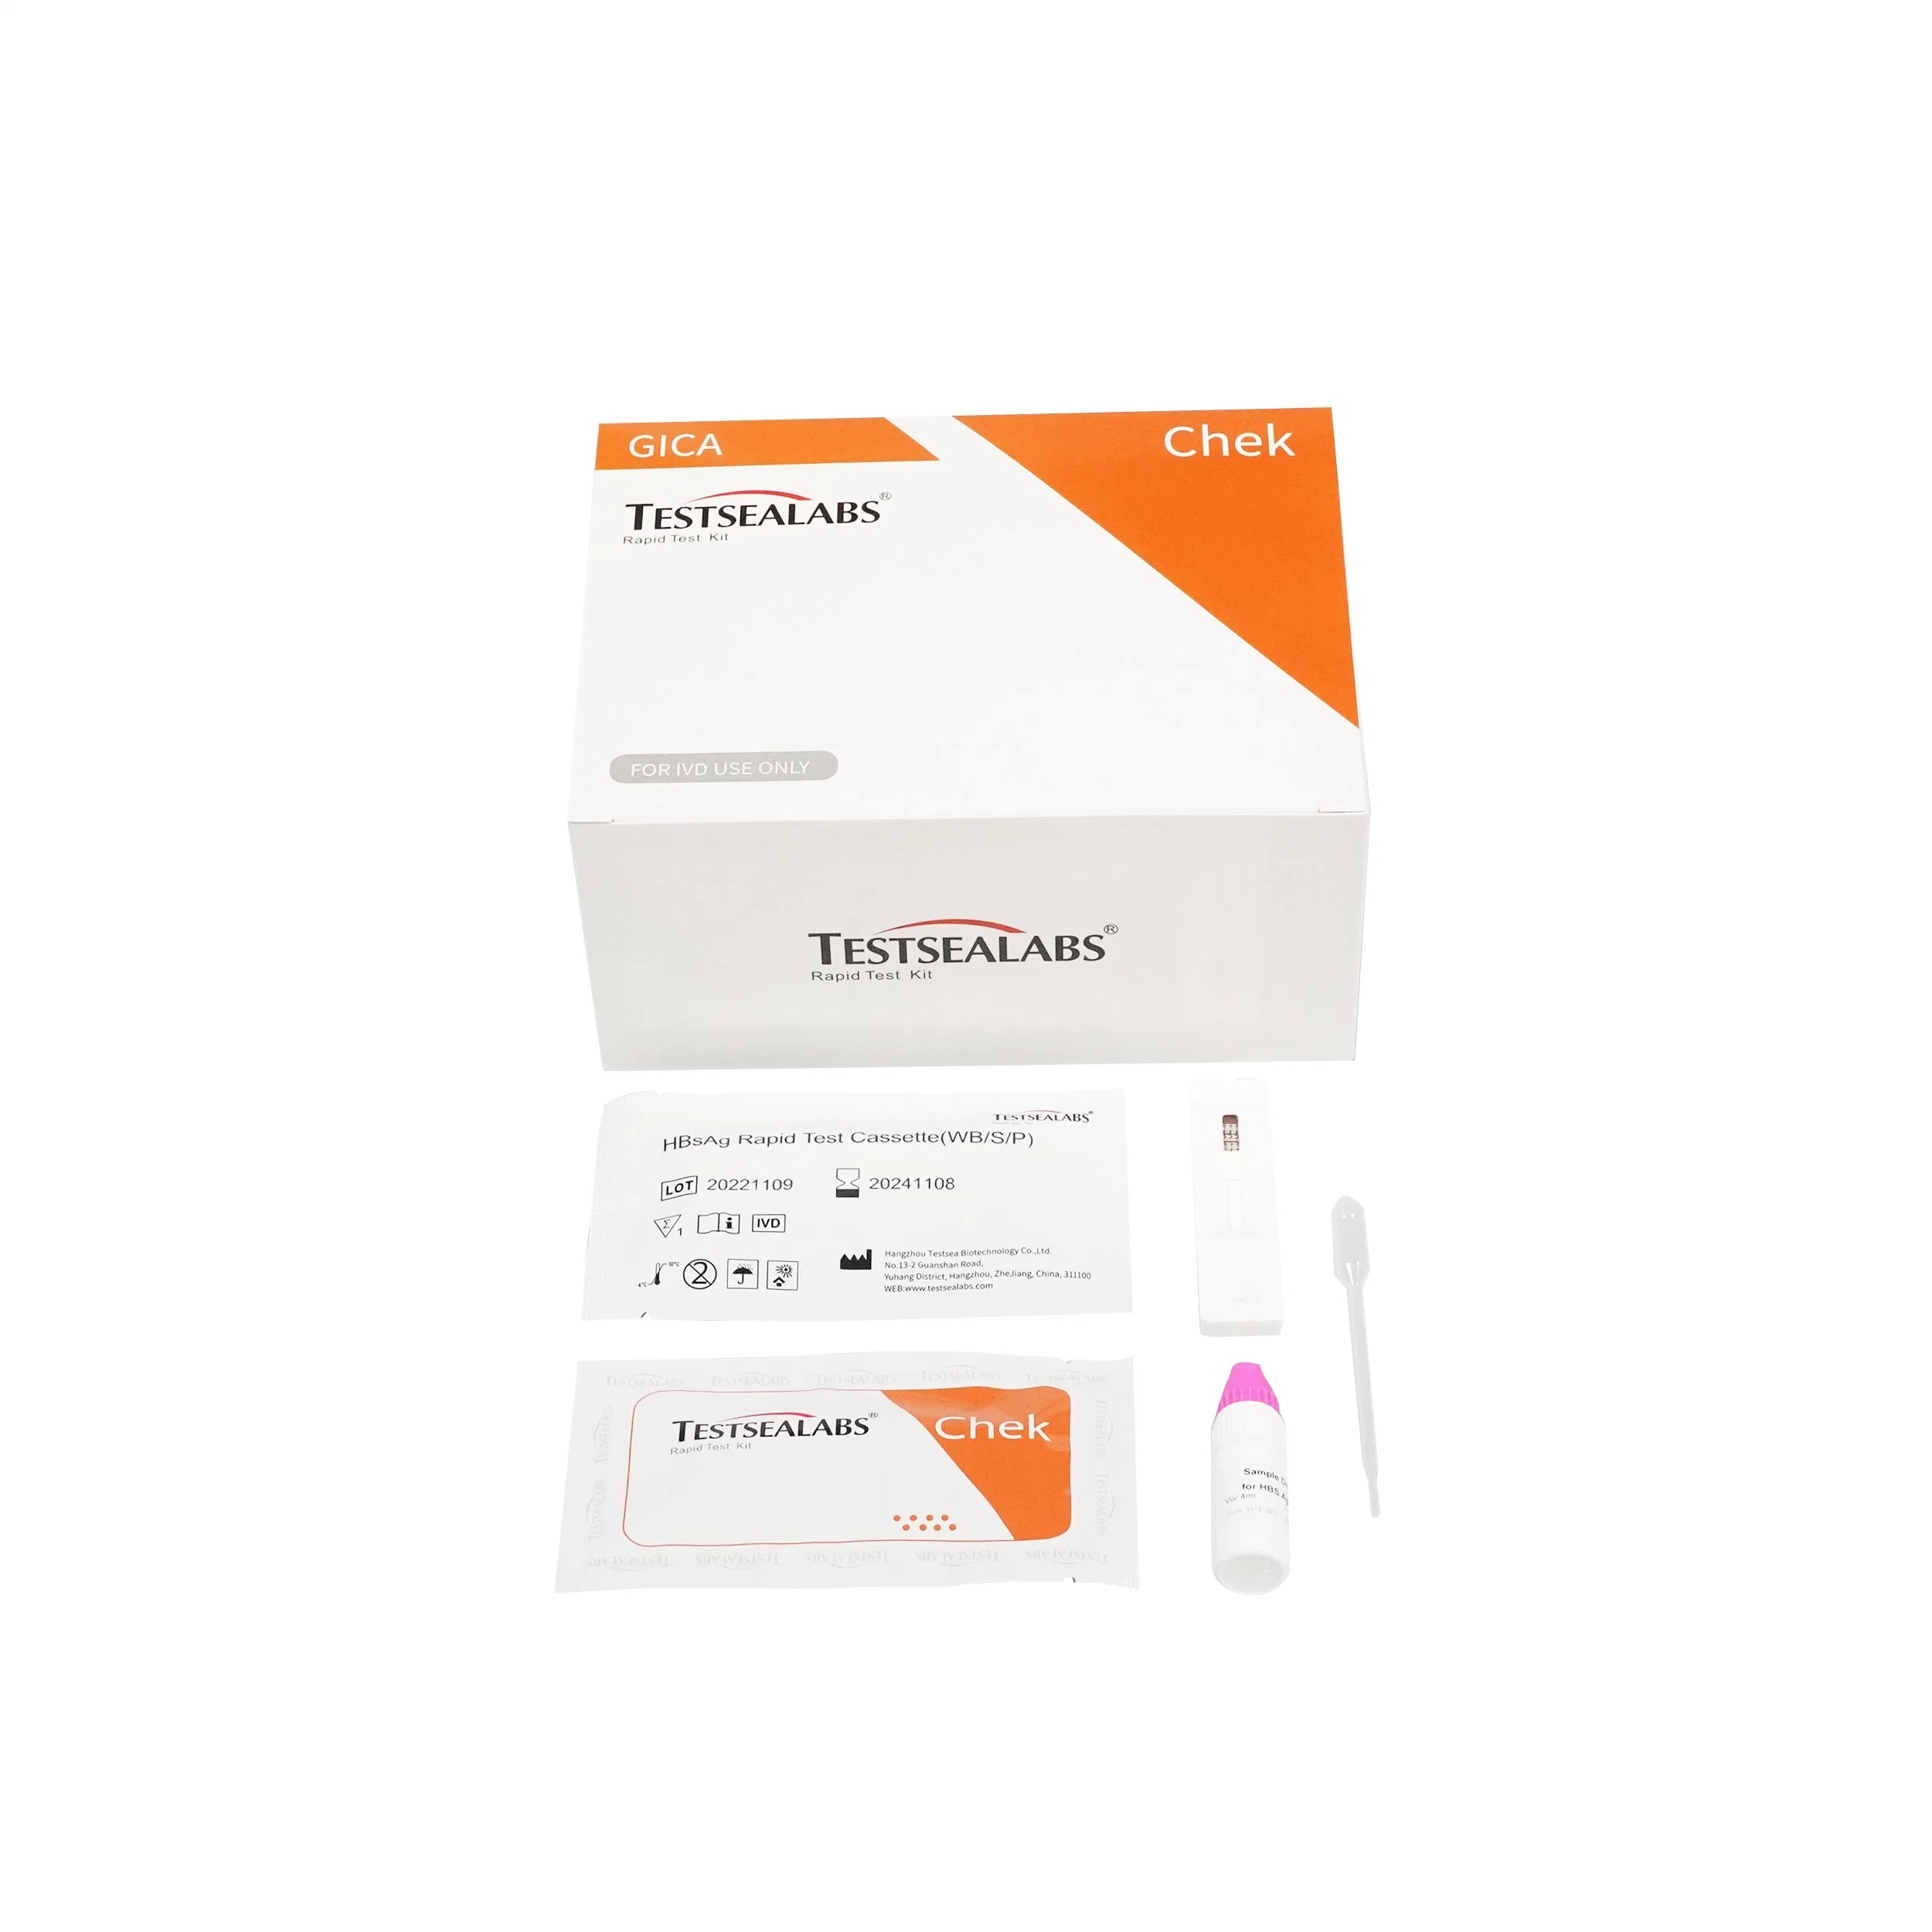 HBsAg Test Kit Antigen Rapid Test Kit for Hepatitis B virus